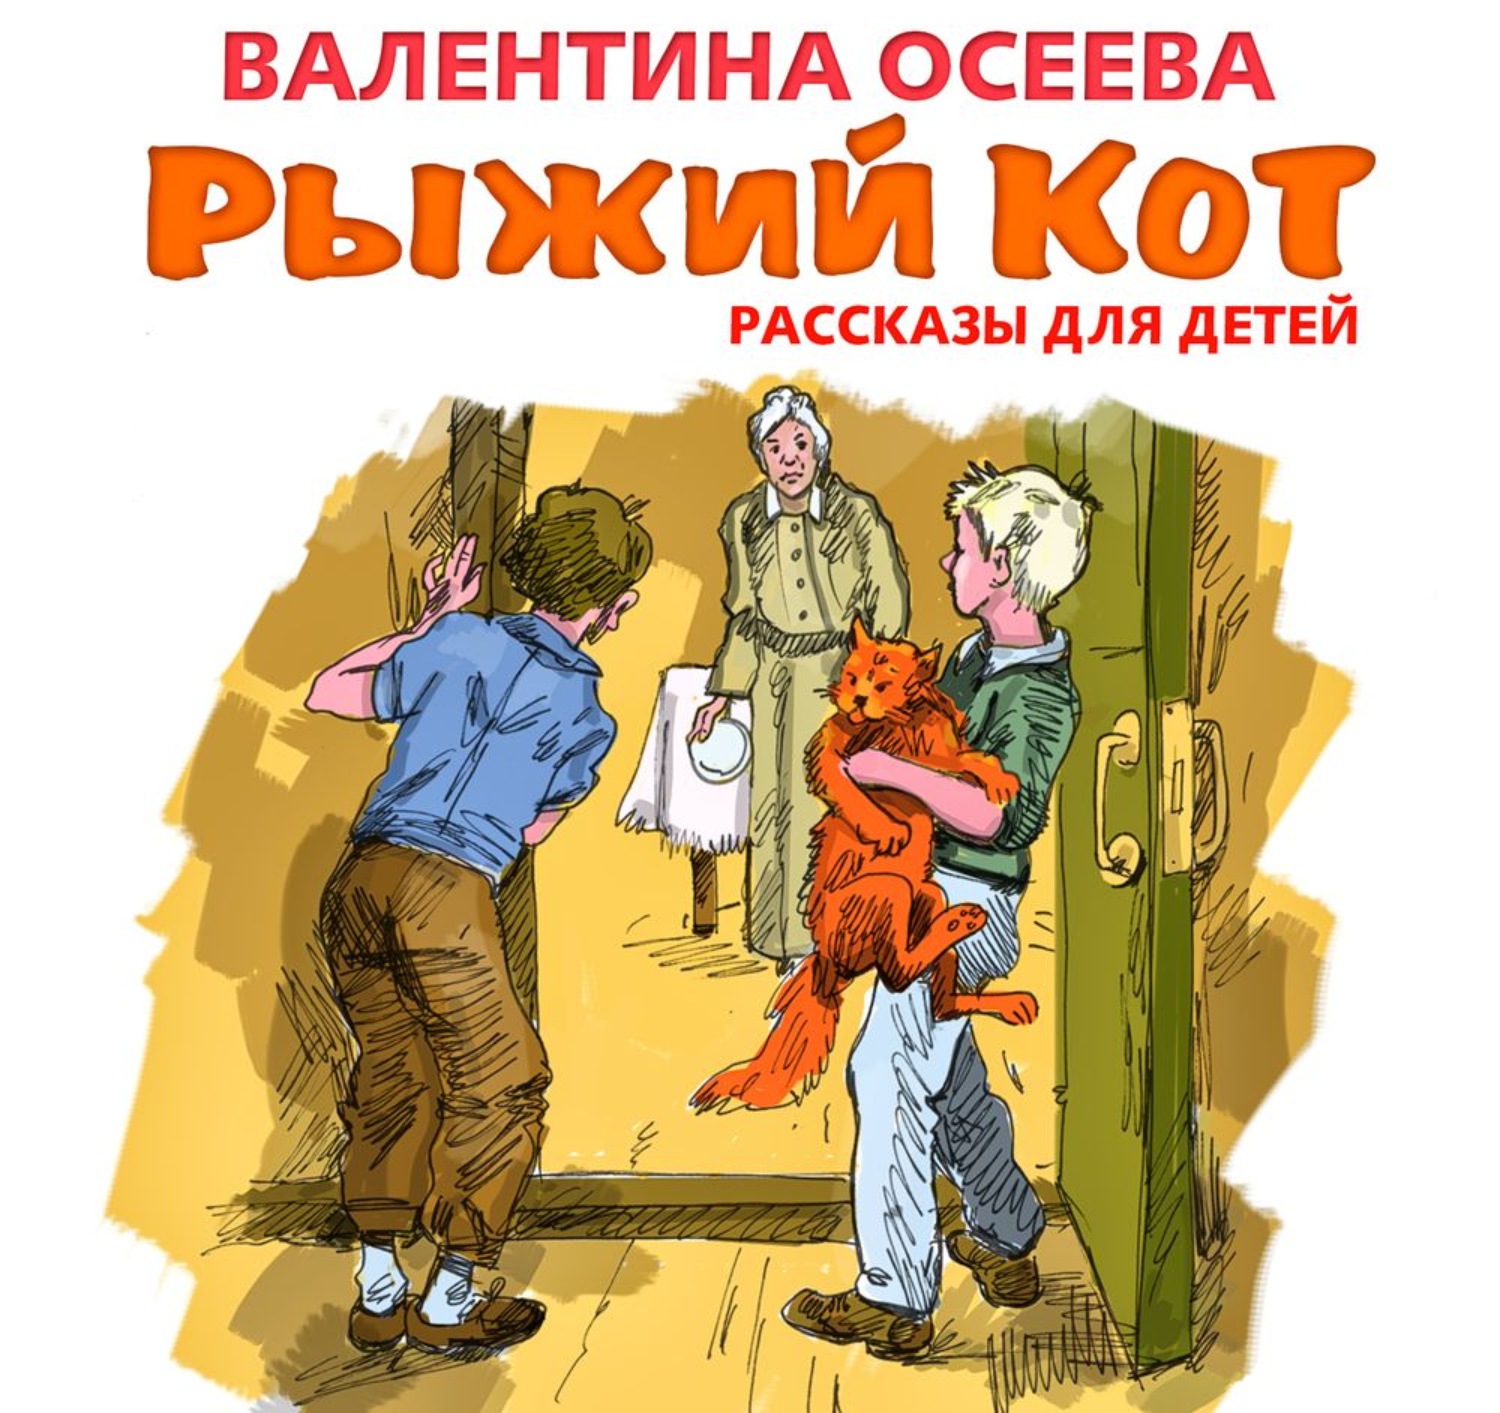 Сборник рыжий кот Осеева